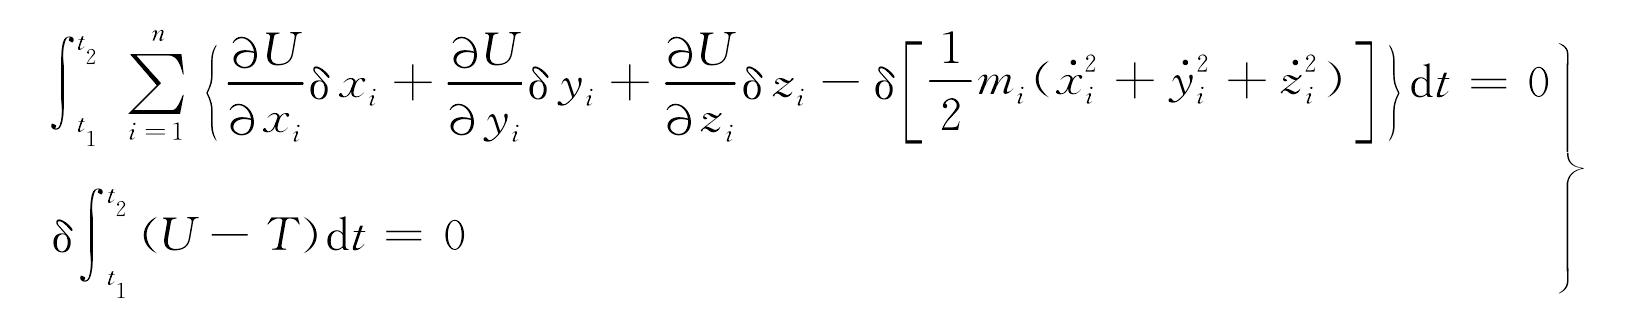 1.2 质点系运动的变分原理——哈密顿原理<sup>[1]</sup>